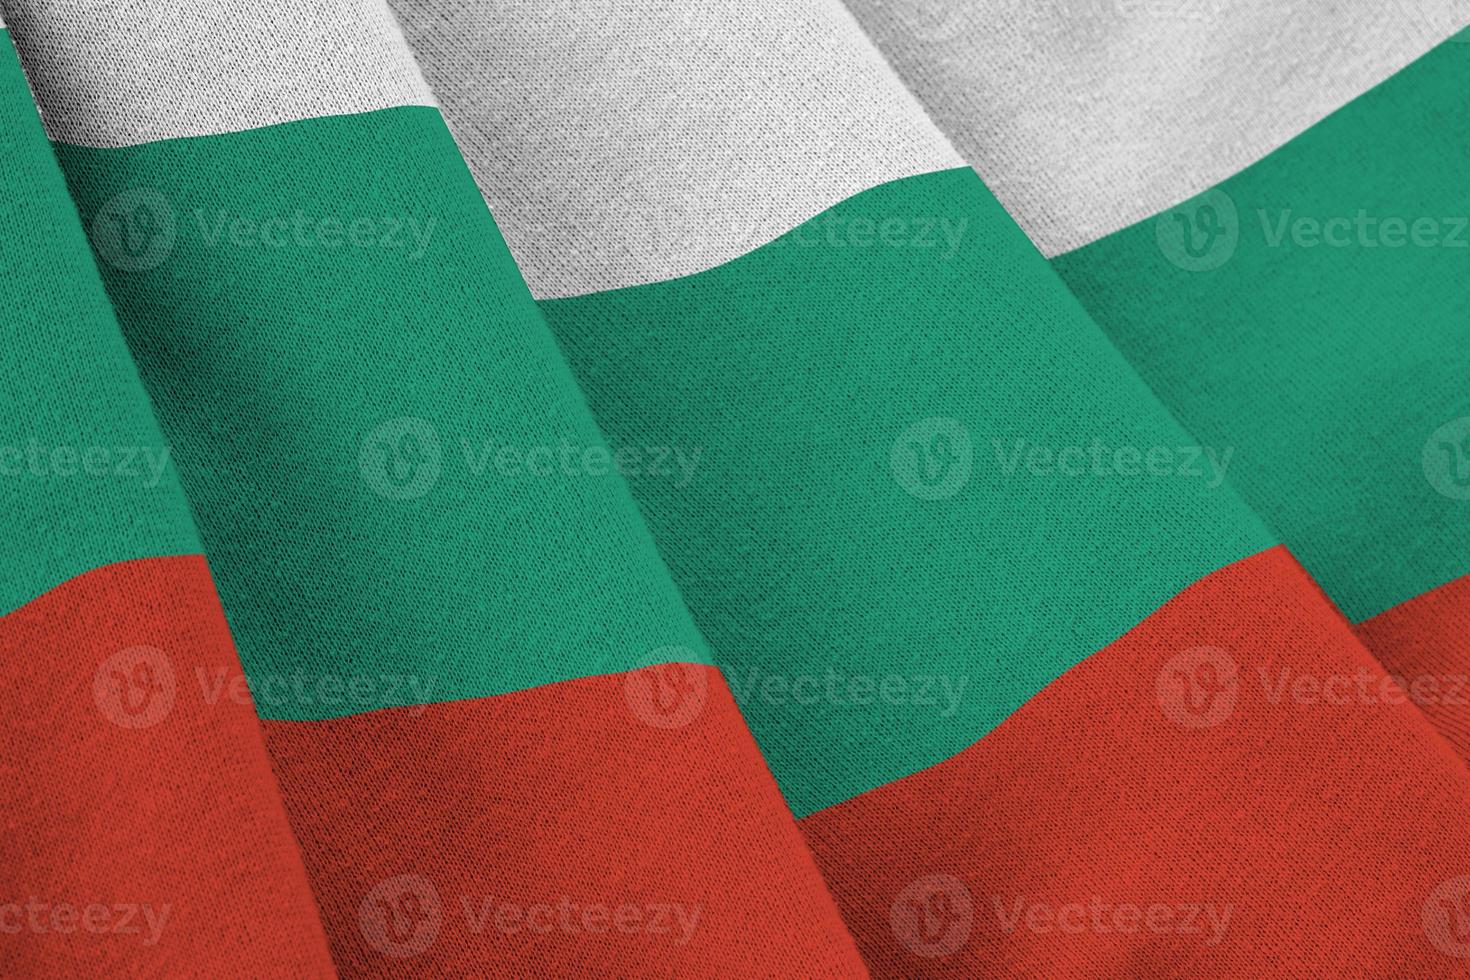 bulgarije vlag met groot vouwen golvend dichtbij omhoog onder de studio licht binnenshuis. de officieel symbolen en kleuren in banier foto